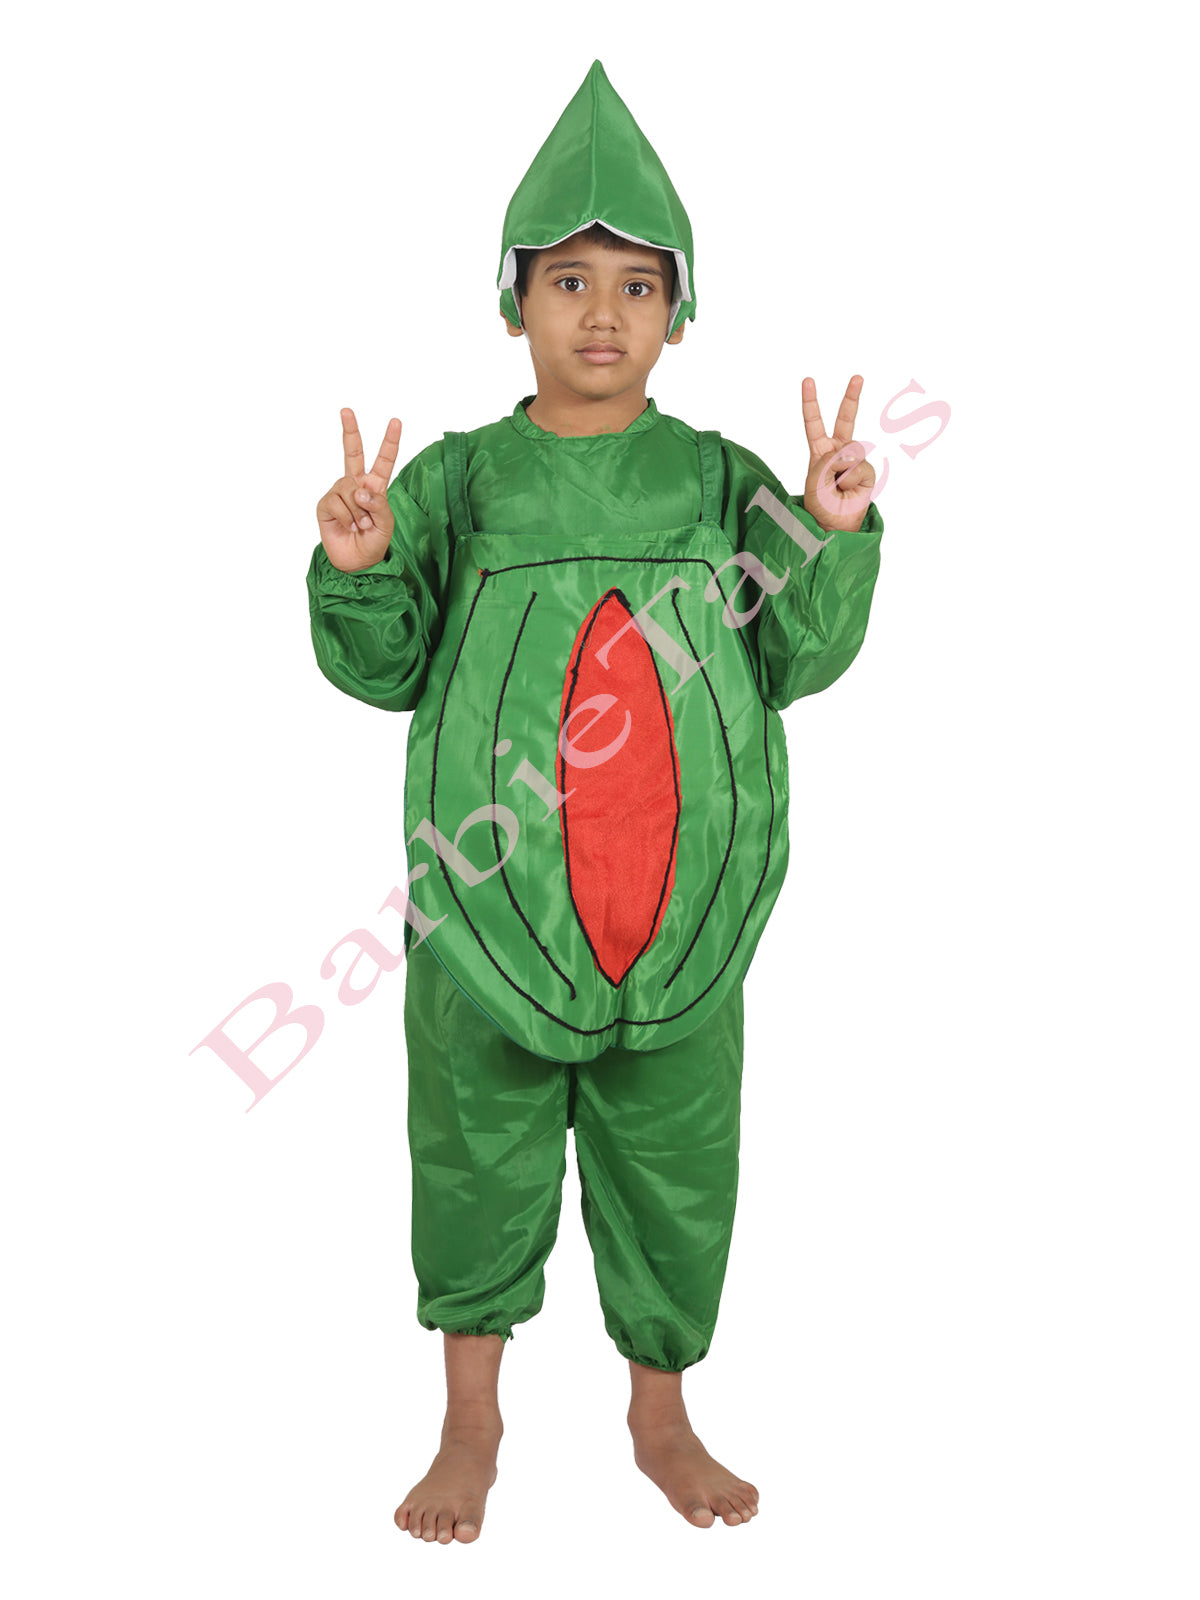 watermelon fancy dress - Google Search | Watermelon costume, Watermelon,  Business for kids